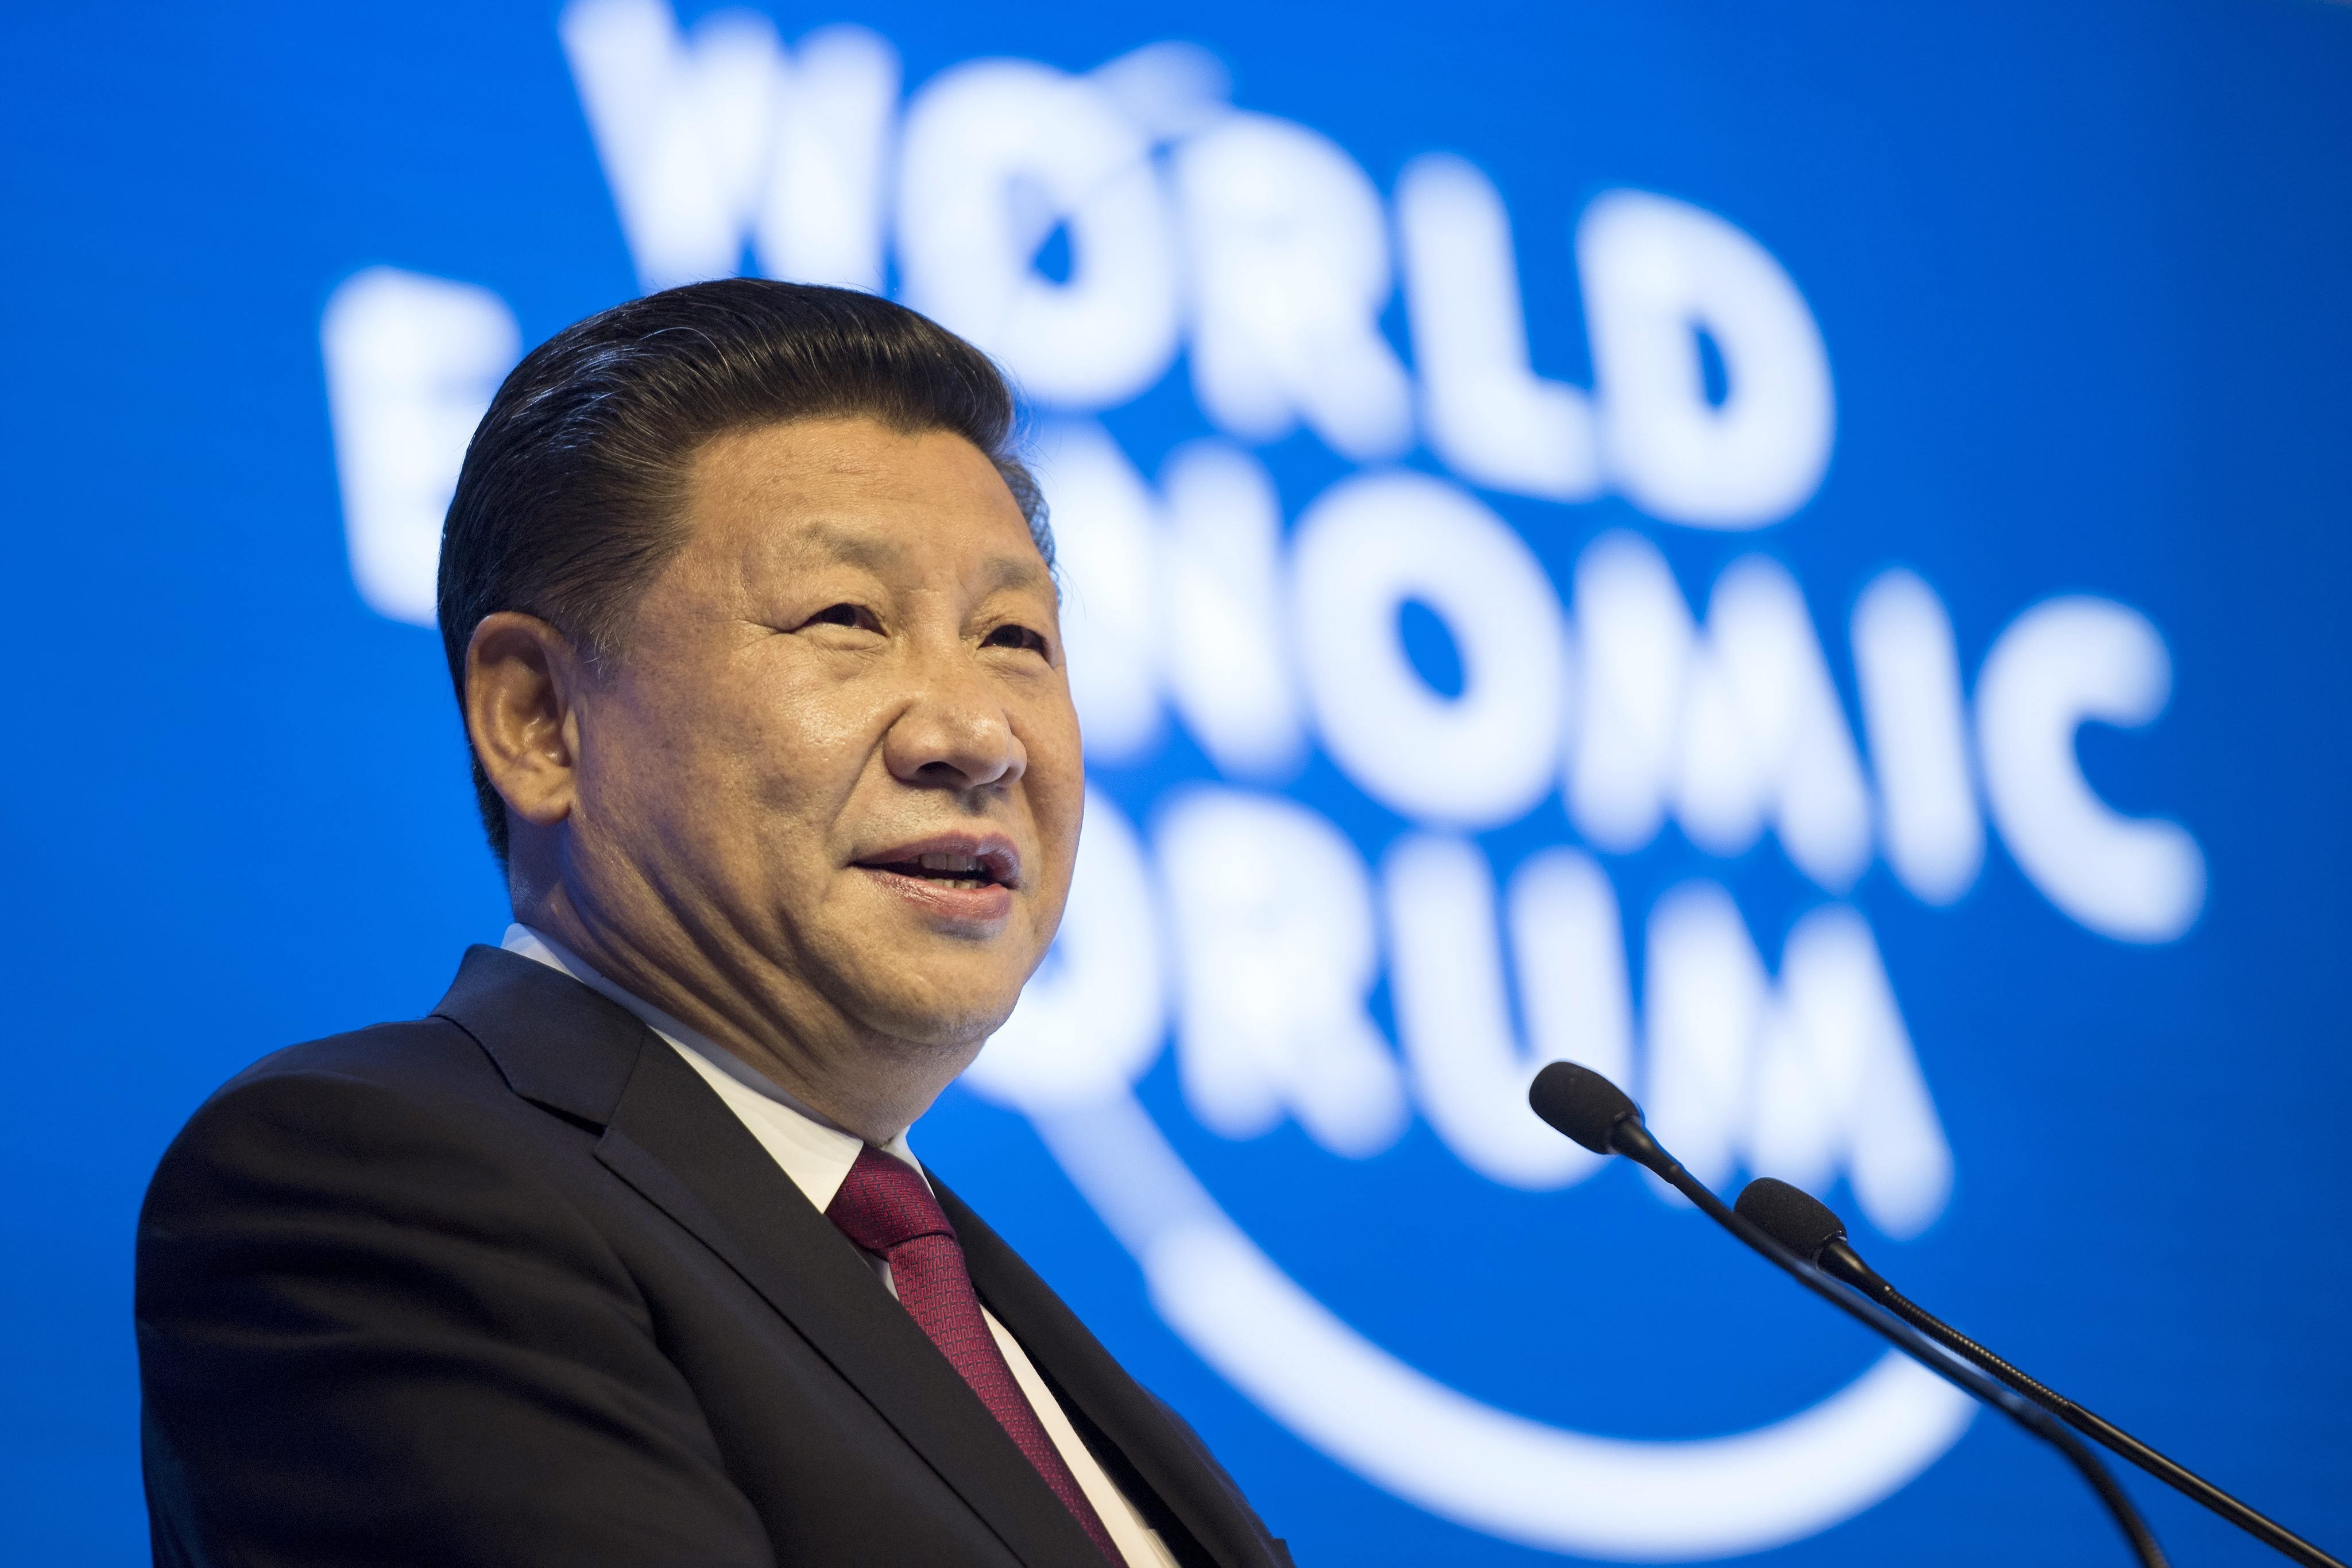 Chủ tịch Trung Quốc Tập Cận Bình tham dự Diễn đàn kinh tế Davos: Cơ hội để Trung Quốc thể hiện mong muốn gia tăng vai trò toàn cầu của mình (19/1/2017)